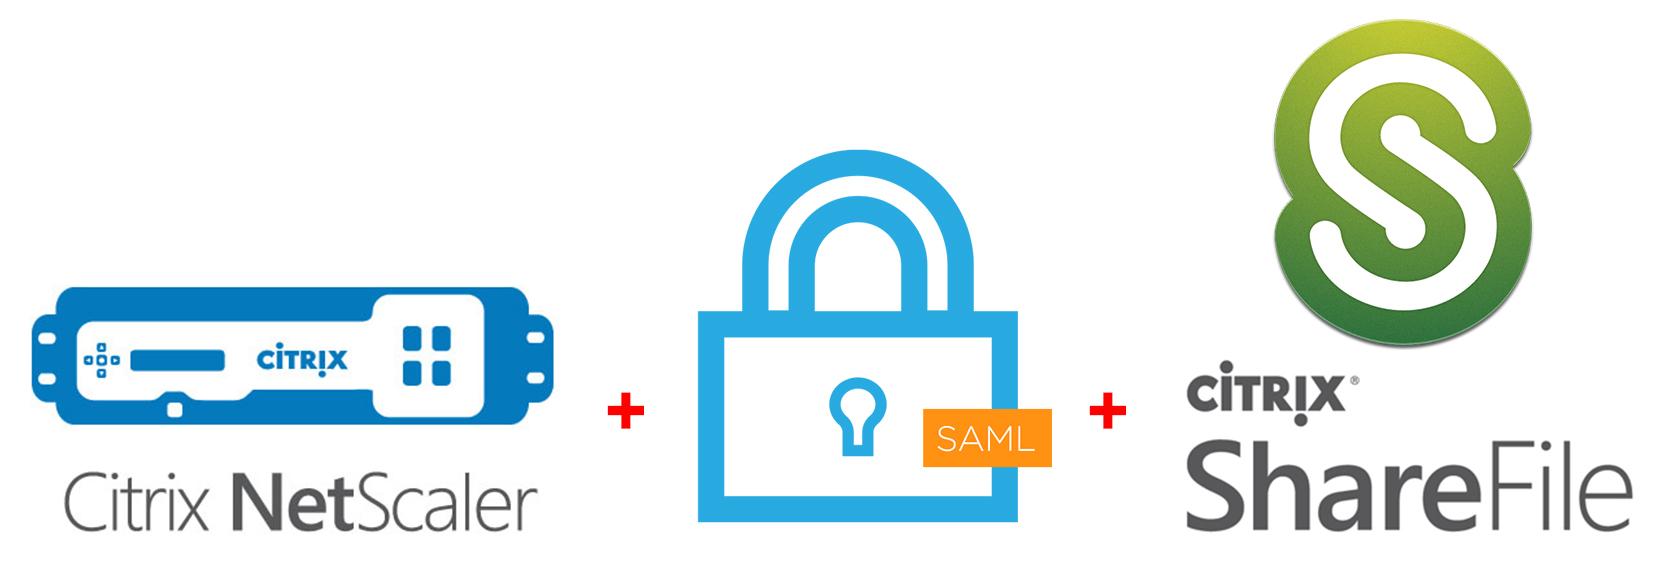 NetScaler Logo - How to setup Citrix ShareFile single sign-on using SAML IDP on ...